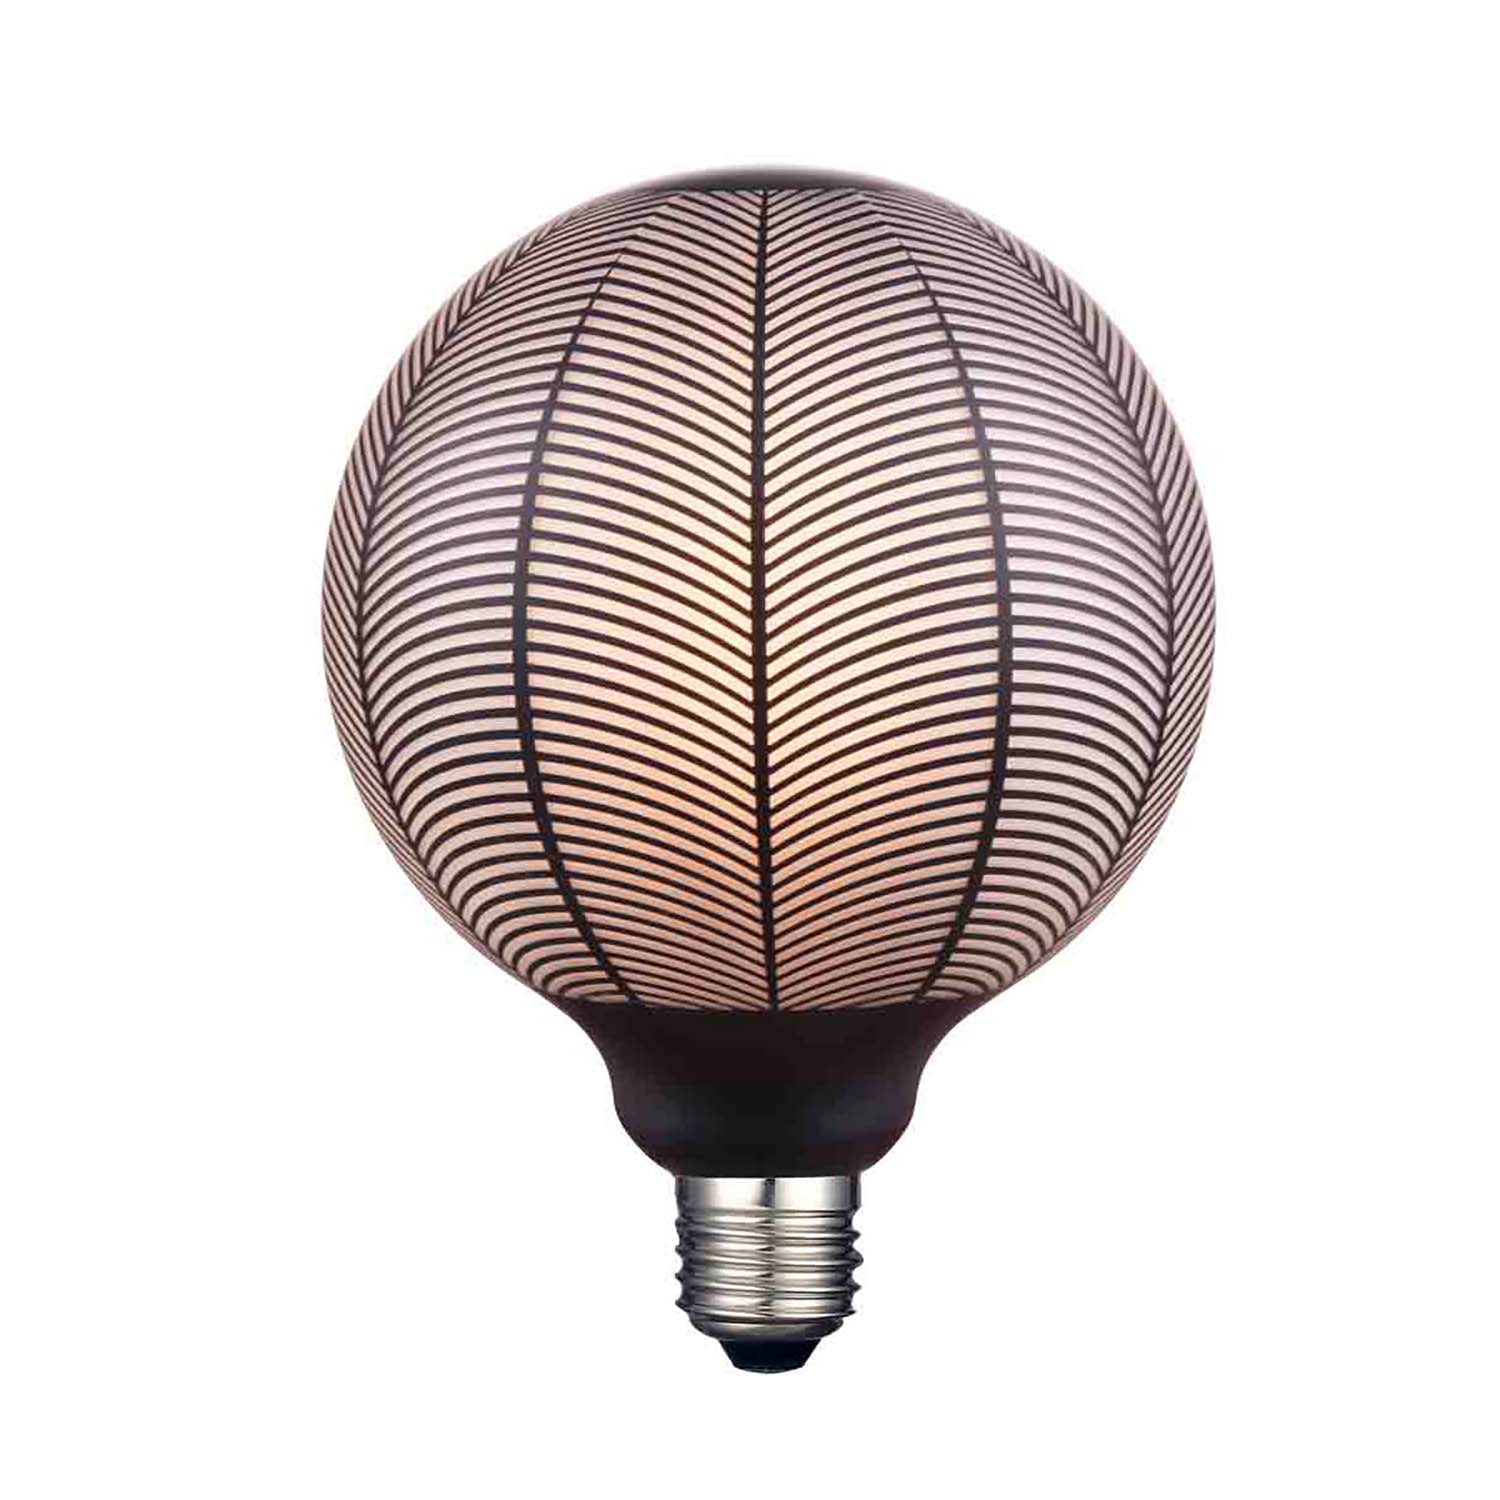 Druck – E27 LED-Glühbirne, schwarz bedrucktes Design